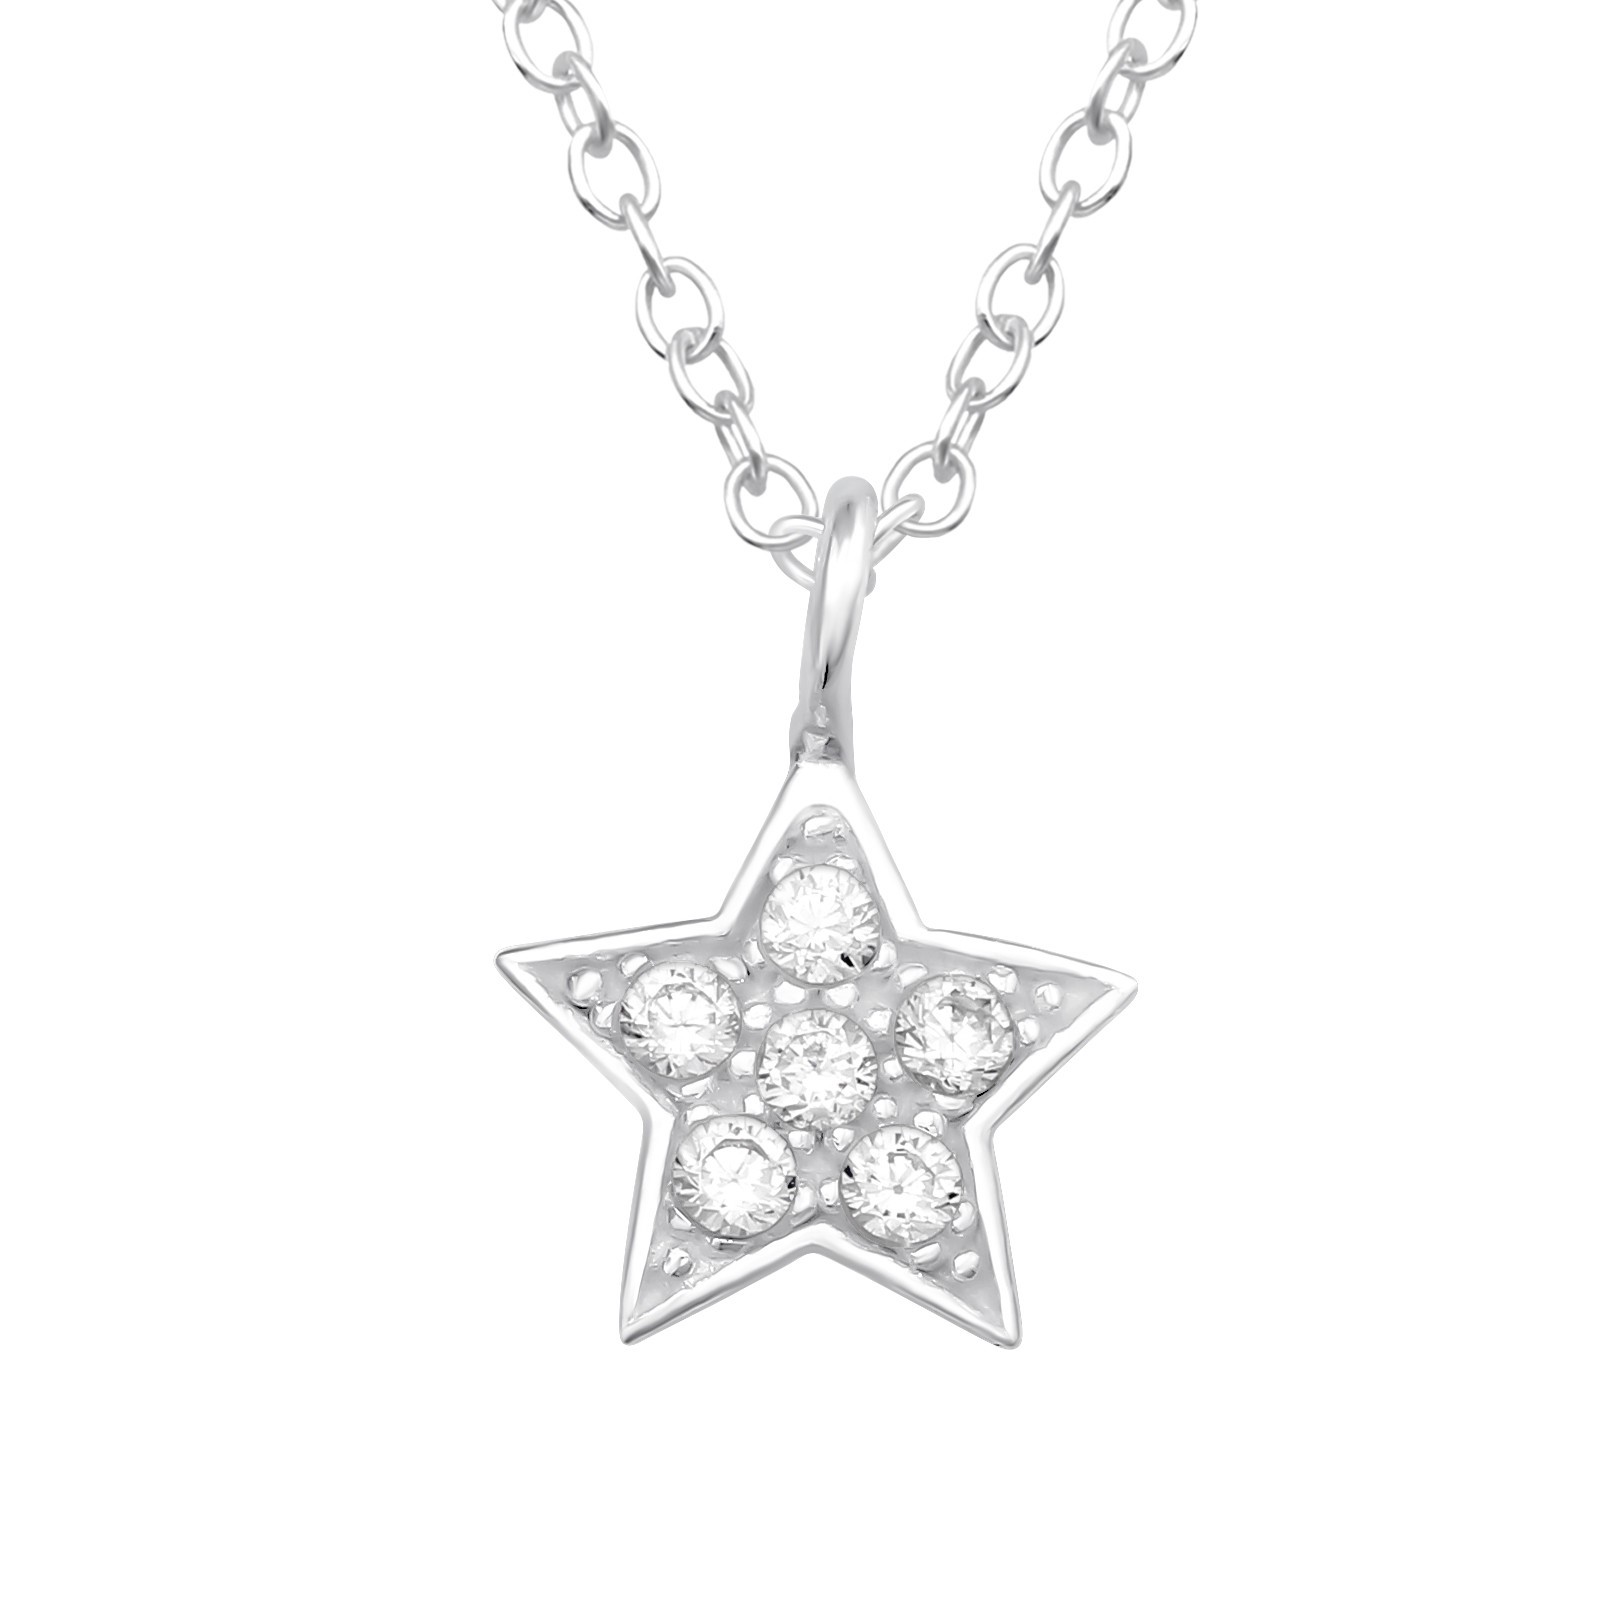 Barnhalsband Glittrande Stjärna - sött halsband till barn i äkta 925 sterling silver